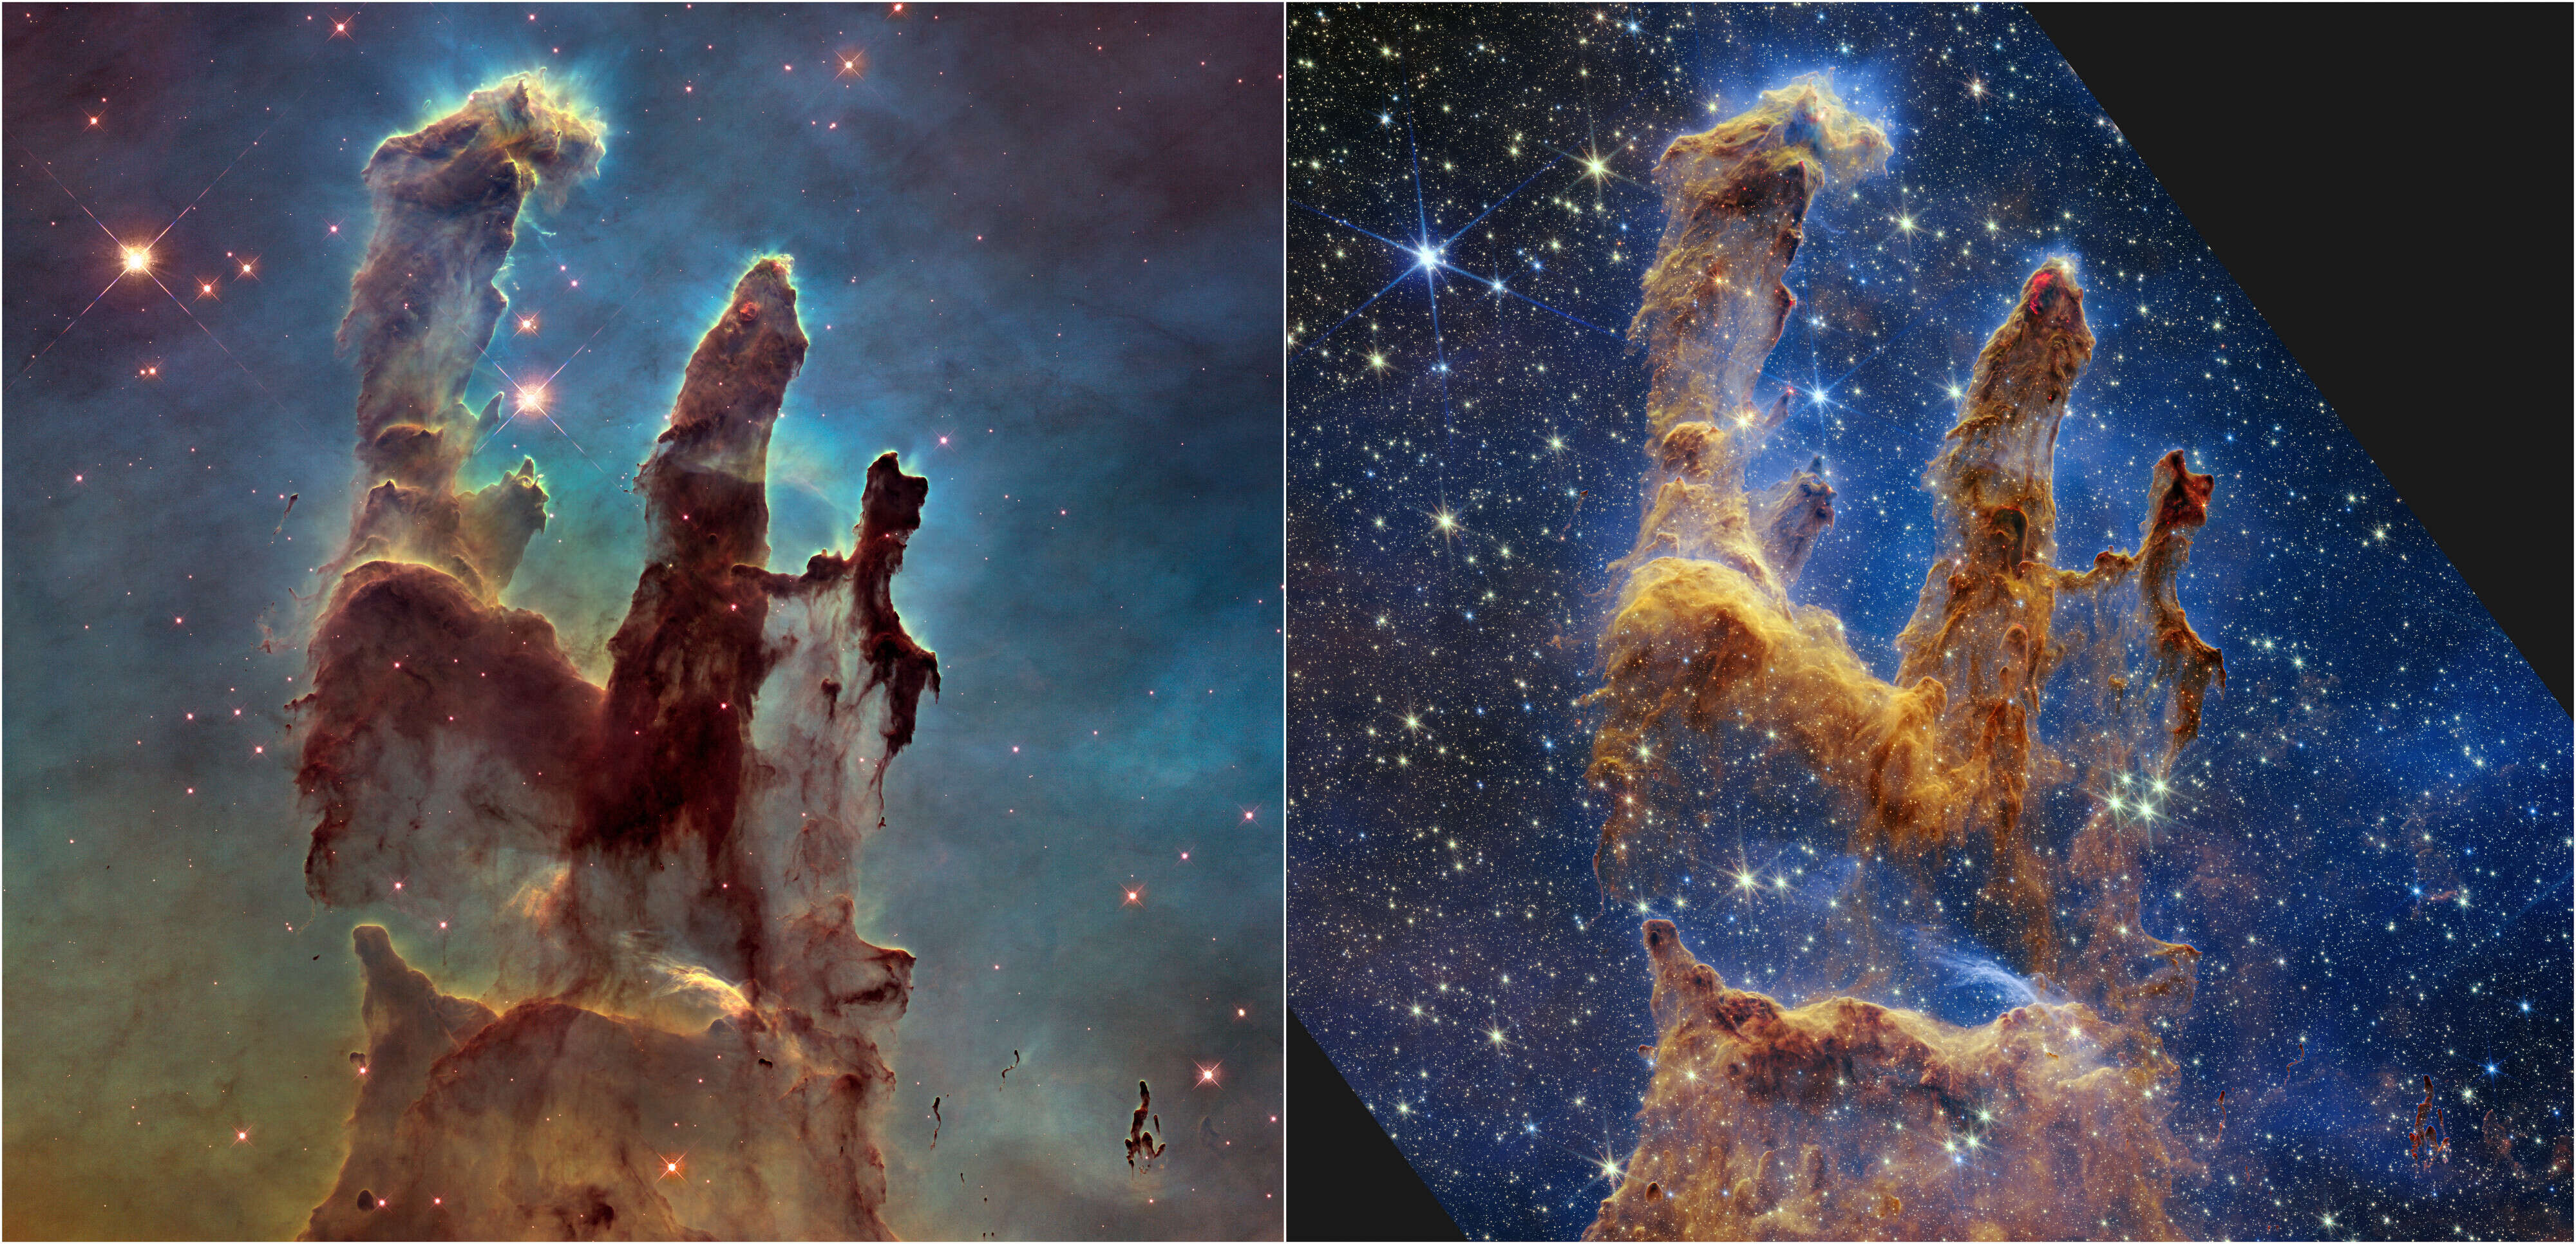 Le télescope spatial Hubble de la NASA/ESA a rendu les piliers de la création célèbres avec sa première image en 1995, mais a répété l'événement en 2014 pour révéler une vue claire et large en lumière visible, illustrée ci-dessus à gauche.